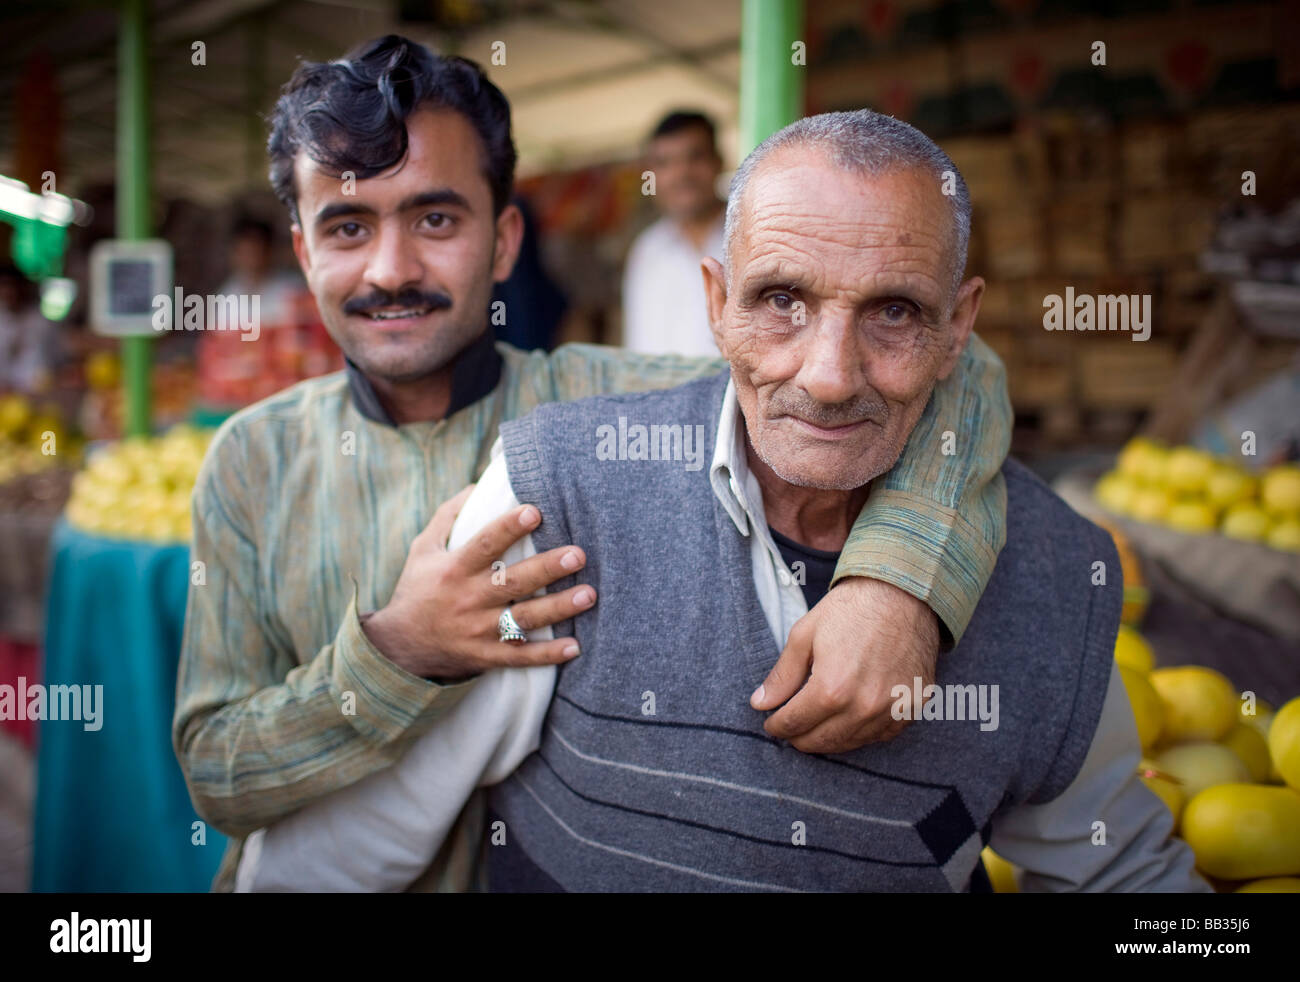 Alter und junger Mann auf dem Itwar Bazar in Islamabad Pakistan Old and young men at the Itwar Bazar in Islamabad Pakistan 03 04 Stock Photo